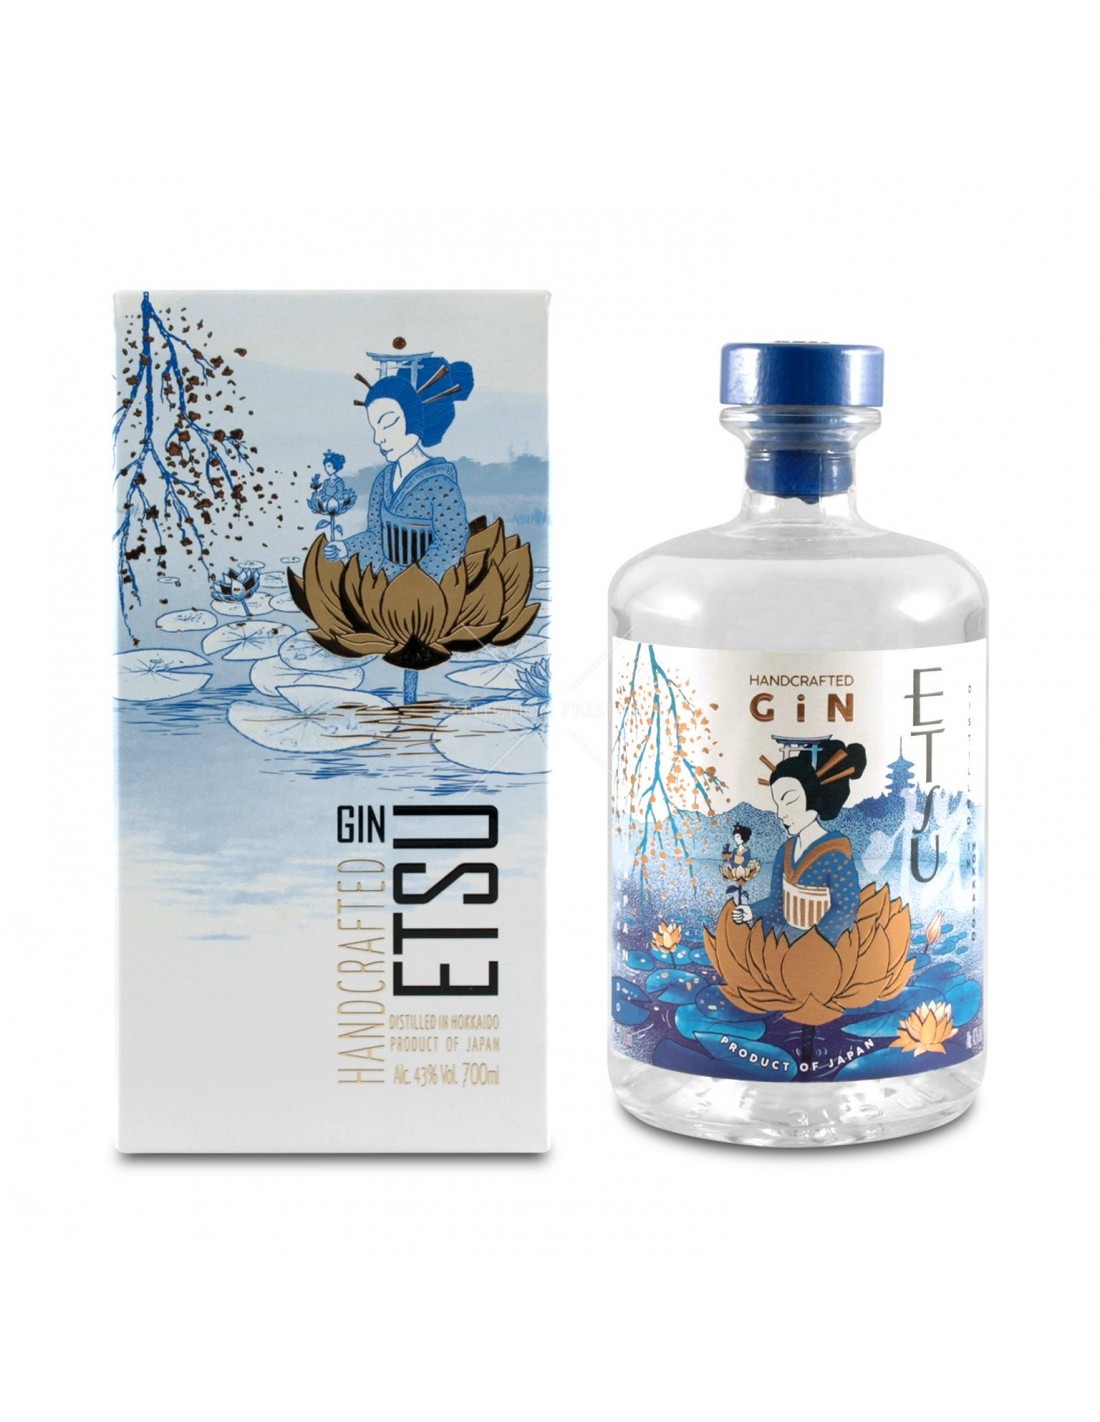 Gin Etsu, 43% alc., 0.7L, Japonia alcooldiscount.ro